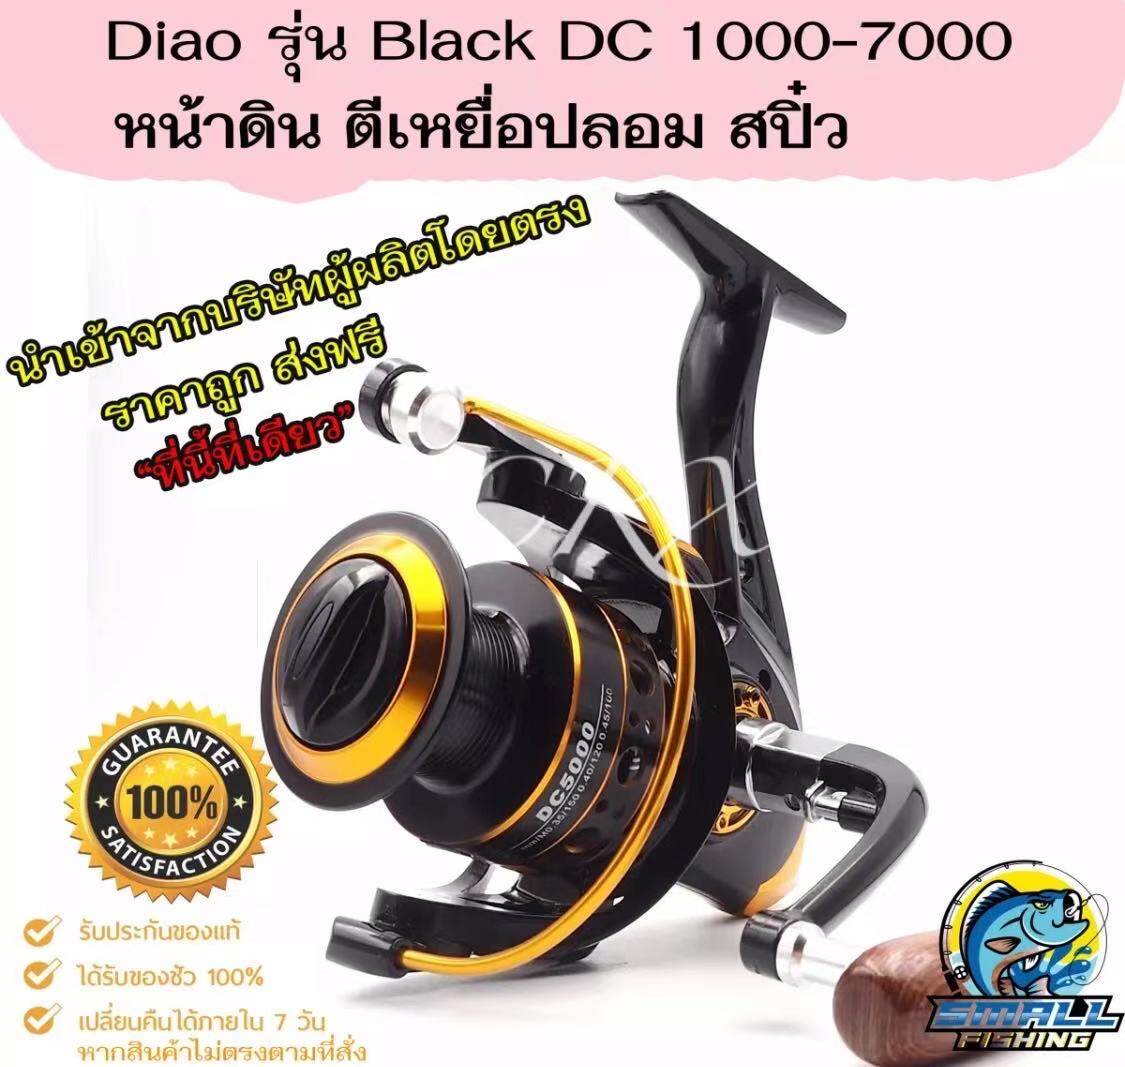 RXC ขอแนะนำ หมุนลื่นๆ รอกตกปลา Diao Delai รุ่น Black DC รอกสปินนิ่ง หน้าดิน สปิ๋ว ตีเหยื่อปลอม รอบ 5.2:1 มี1000-7000 BK